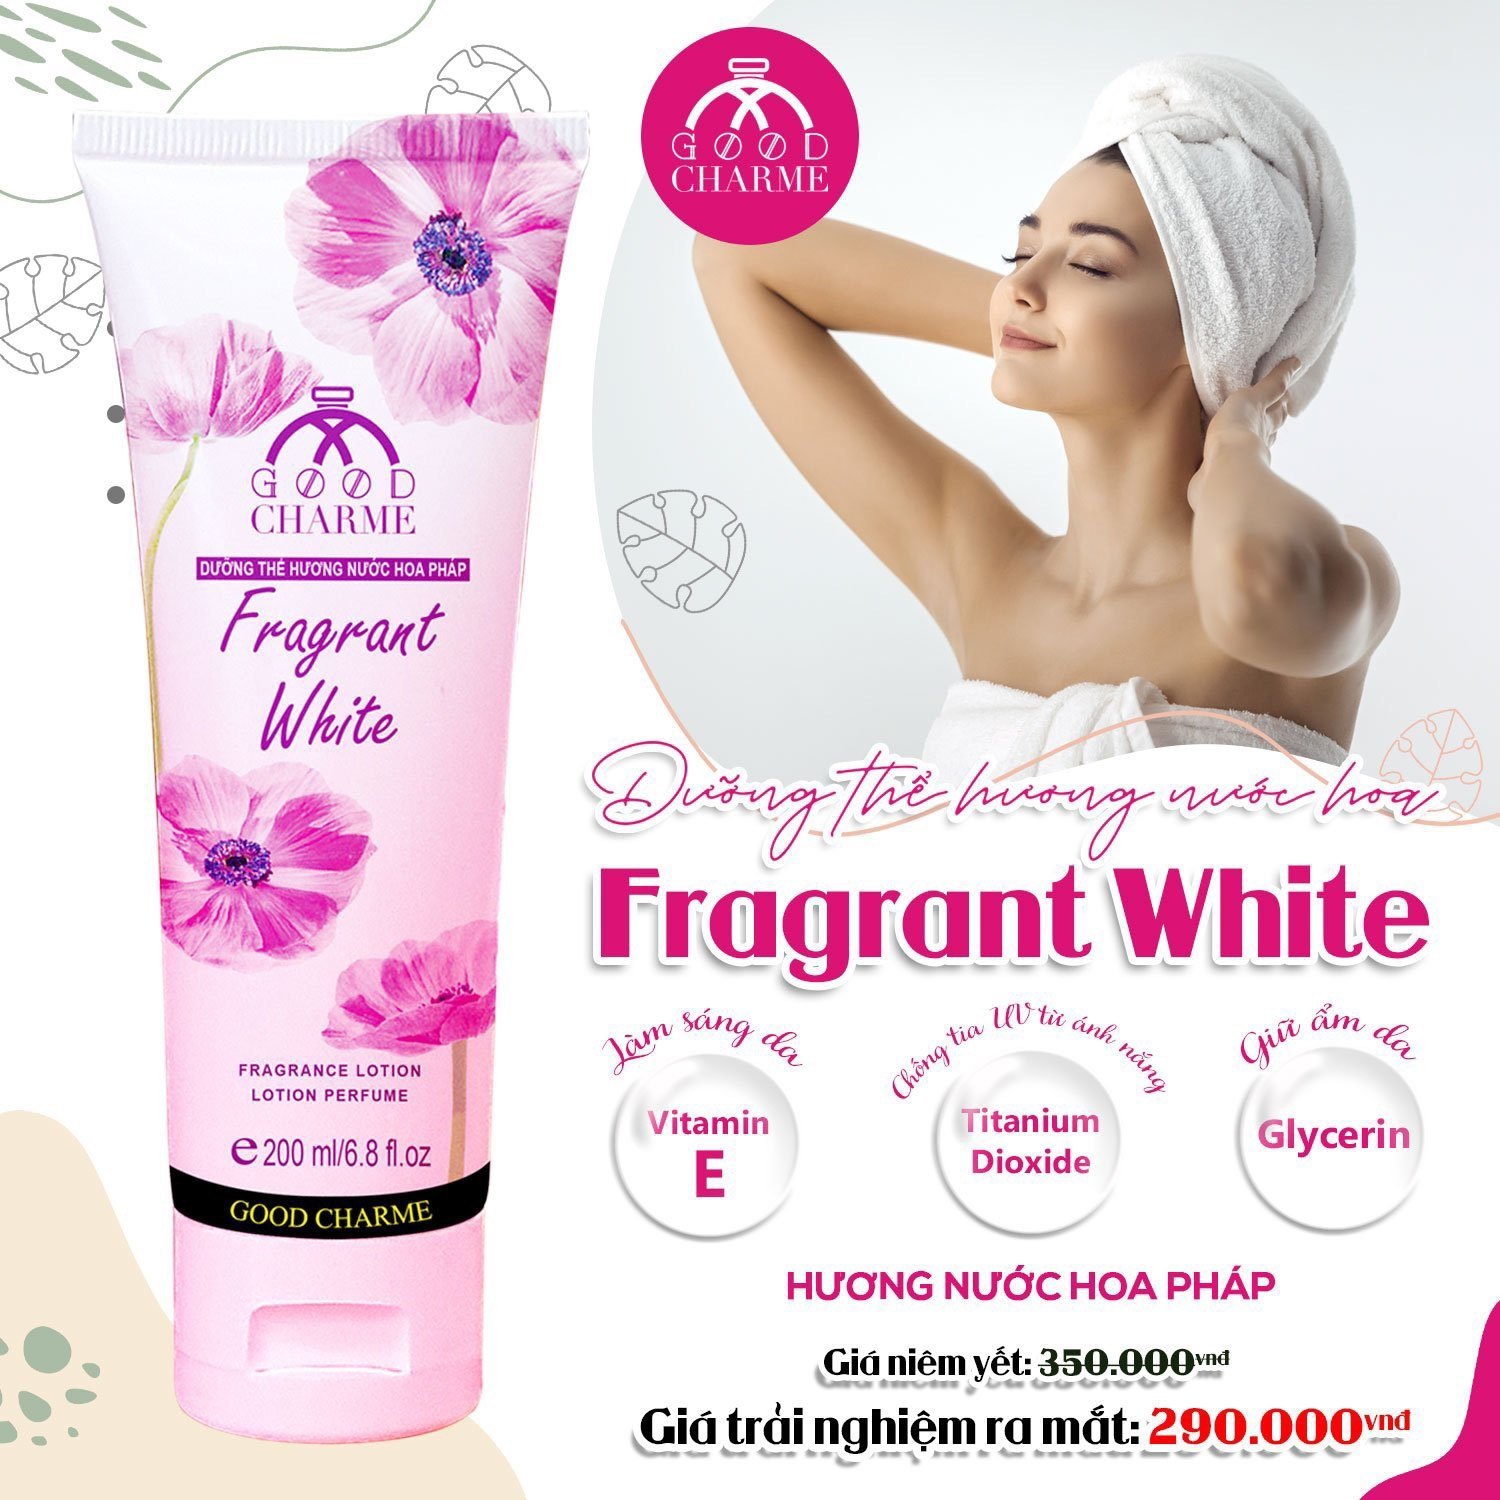 Dưỡng Thể Hương Nước Hoa Good Charme Fragrant White 200ml